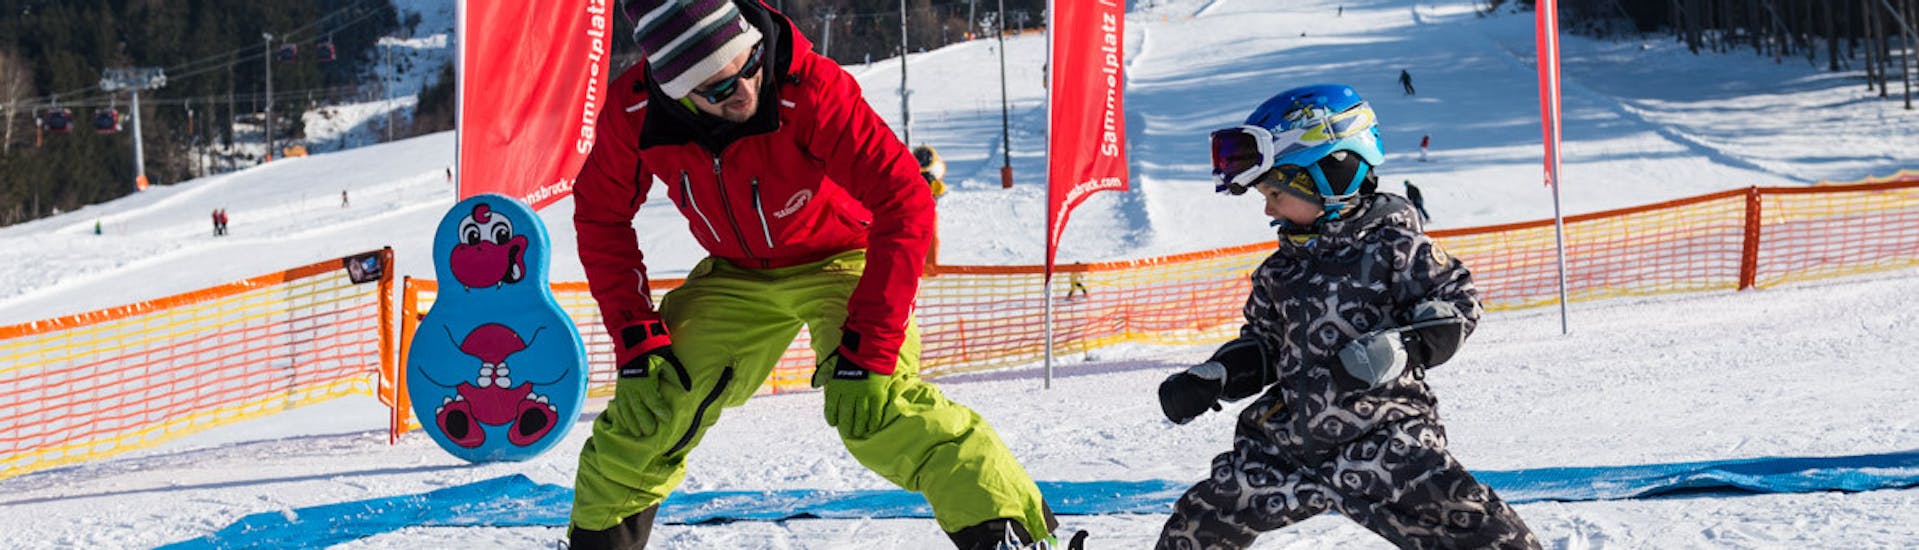 Lezioni private di sci per bambini per tutti i livelli con Ski- & Snowboardschule Innsbruck.